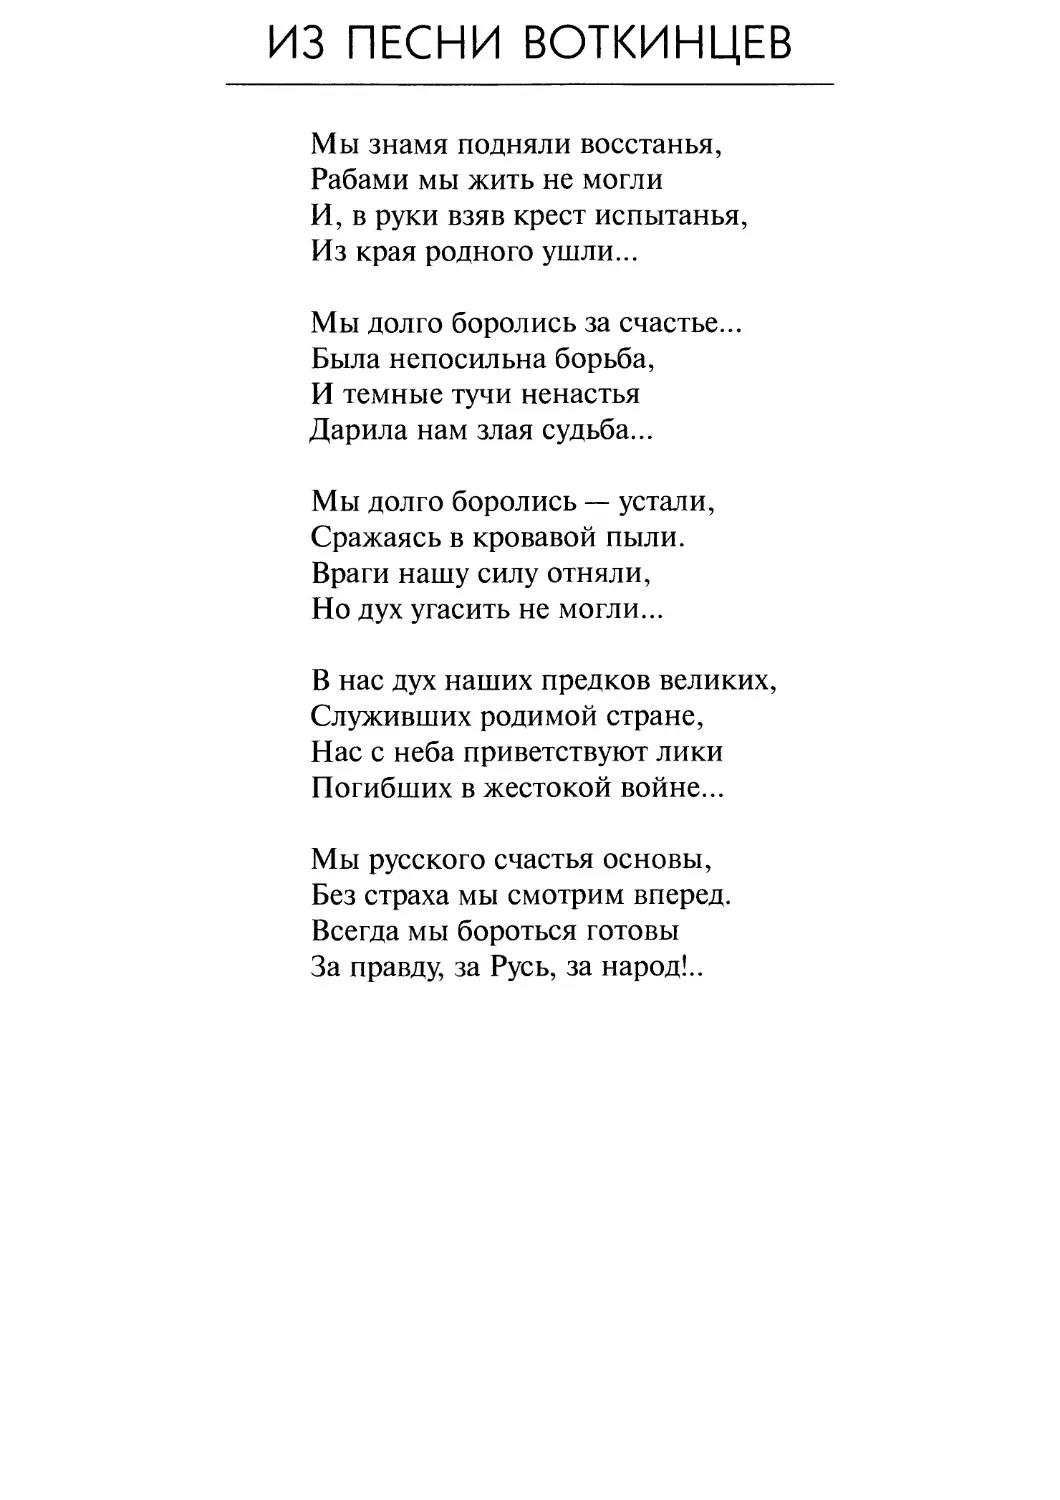 Из песни Воткинцев